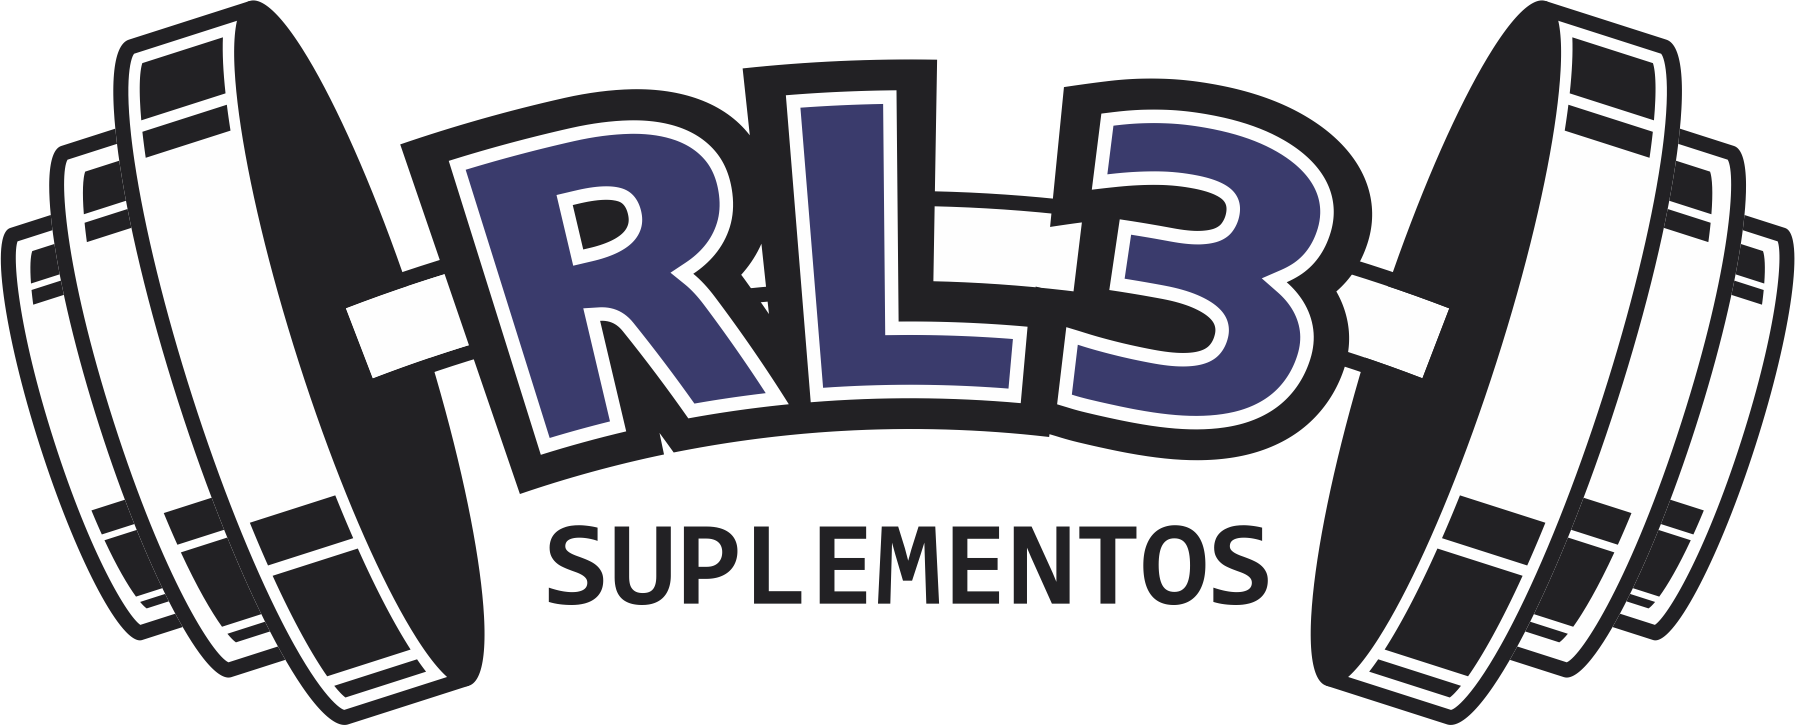 rl3 logo.png